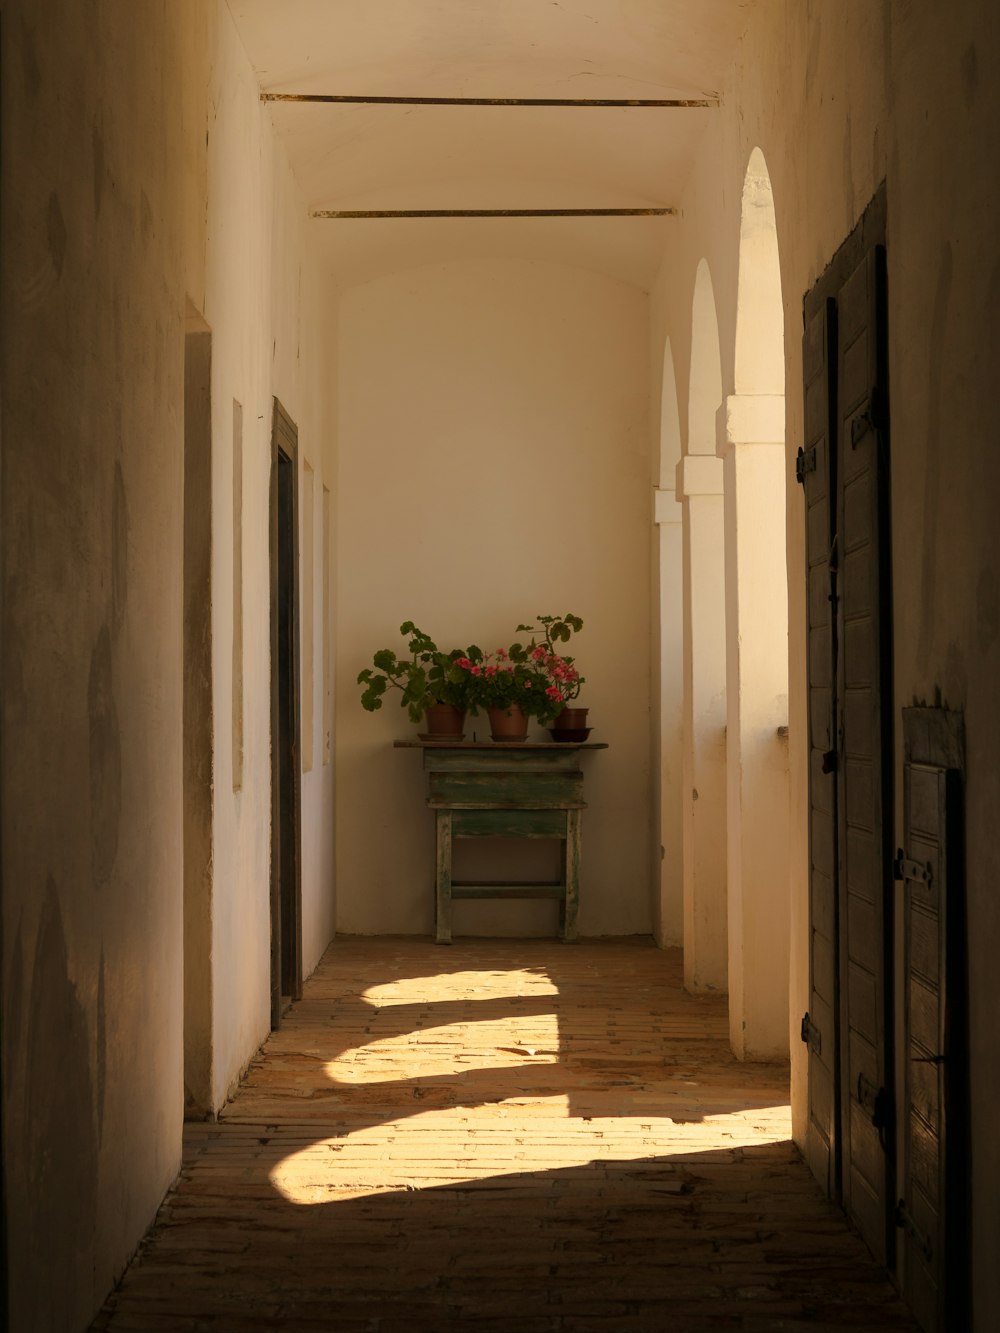 un corridoio con panca e piante in vaso